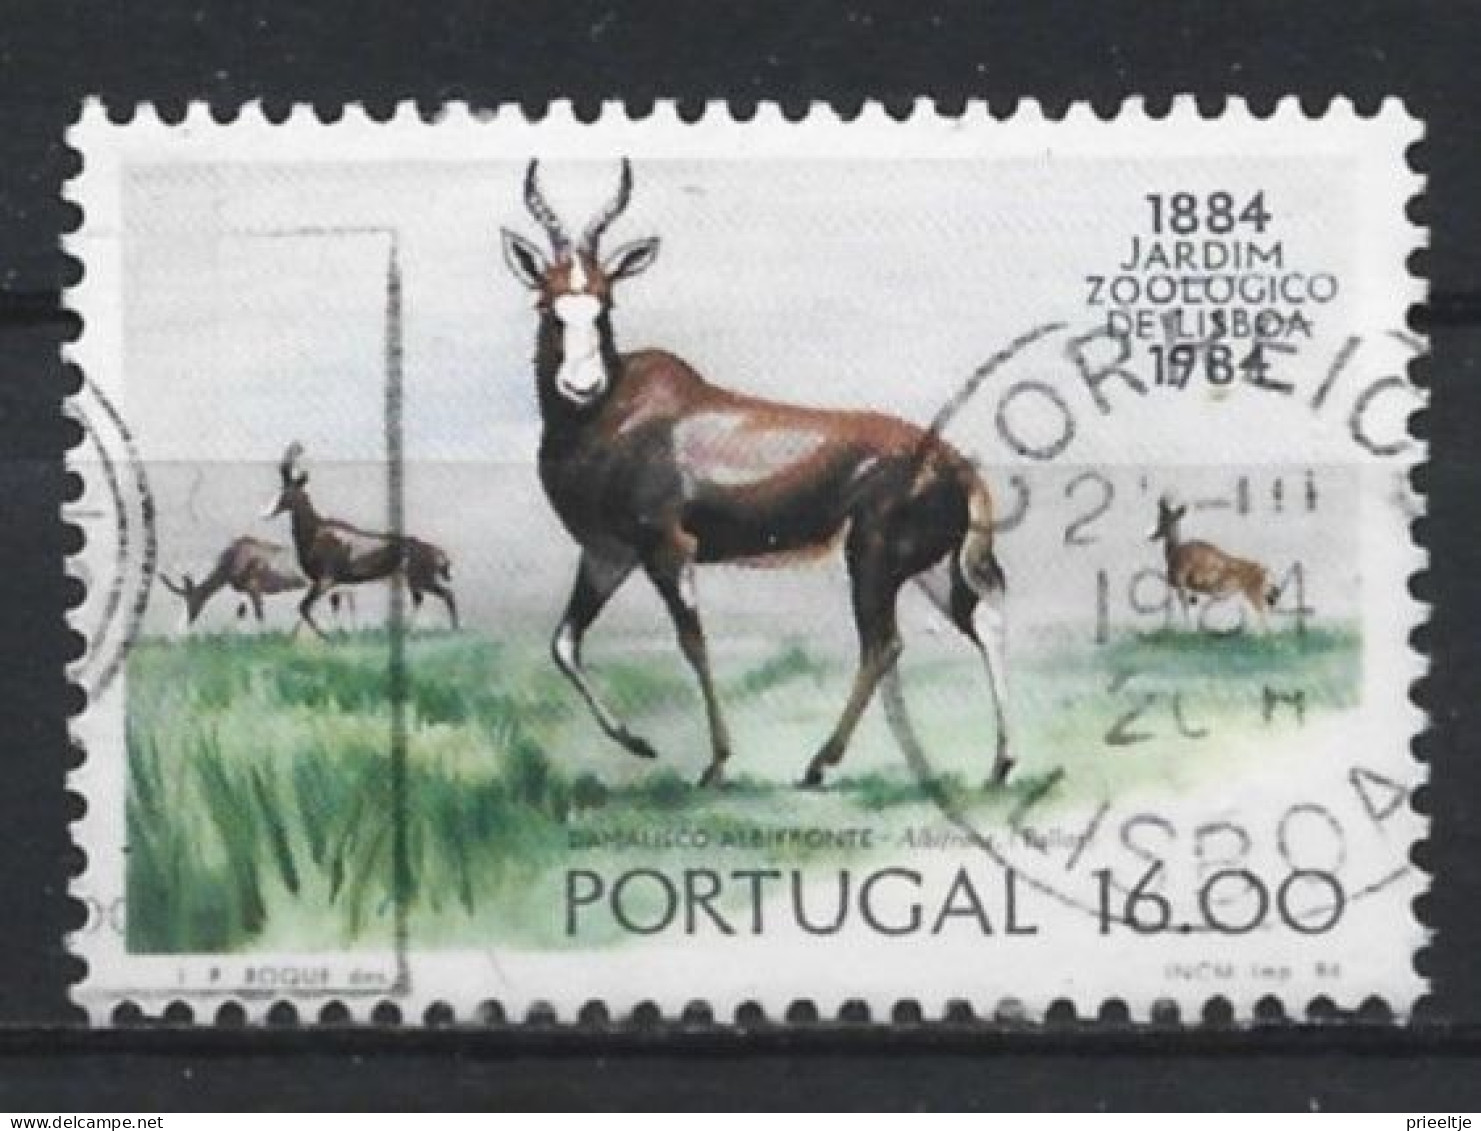 Portugal 1984 Fauna Y.T. 1598 (0) - Oblitérés